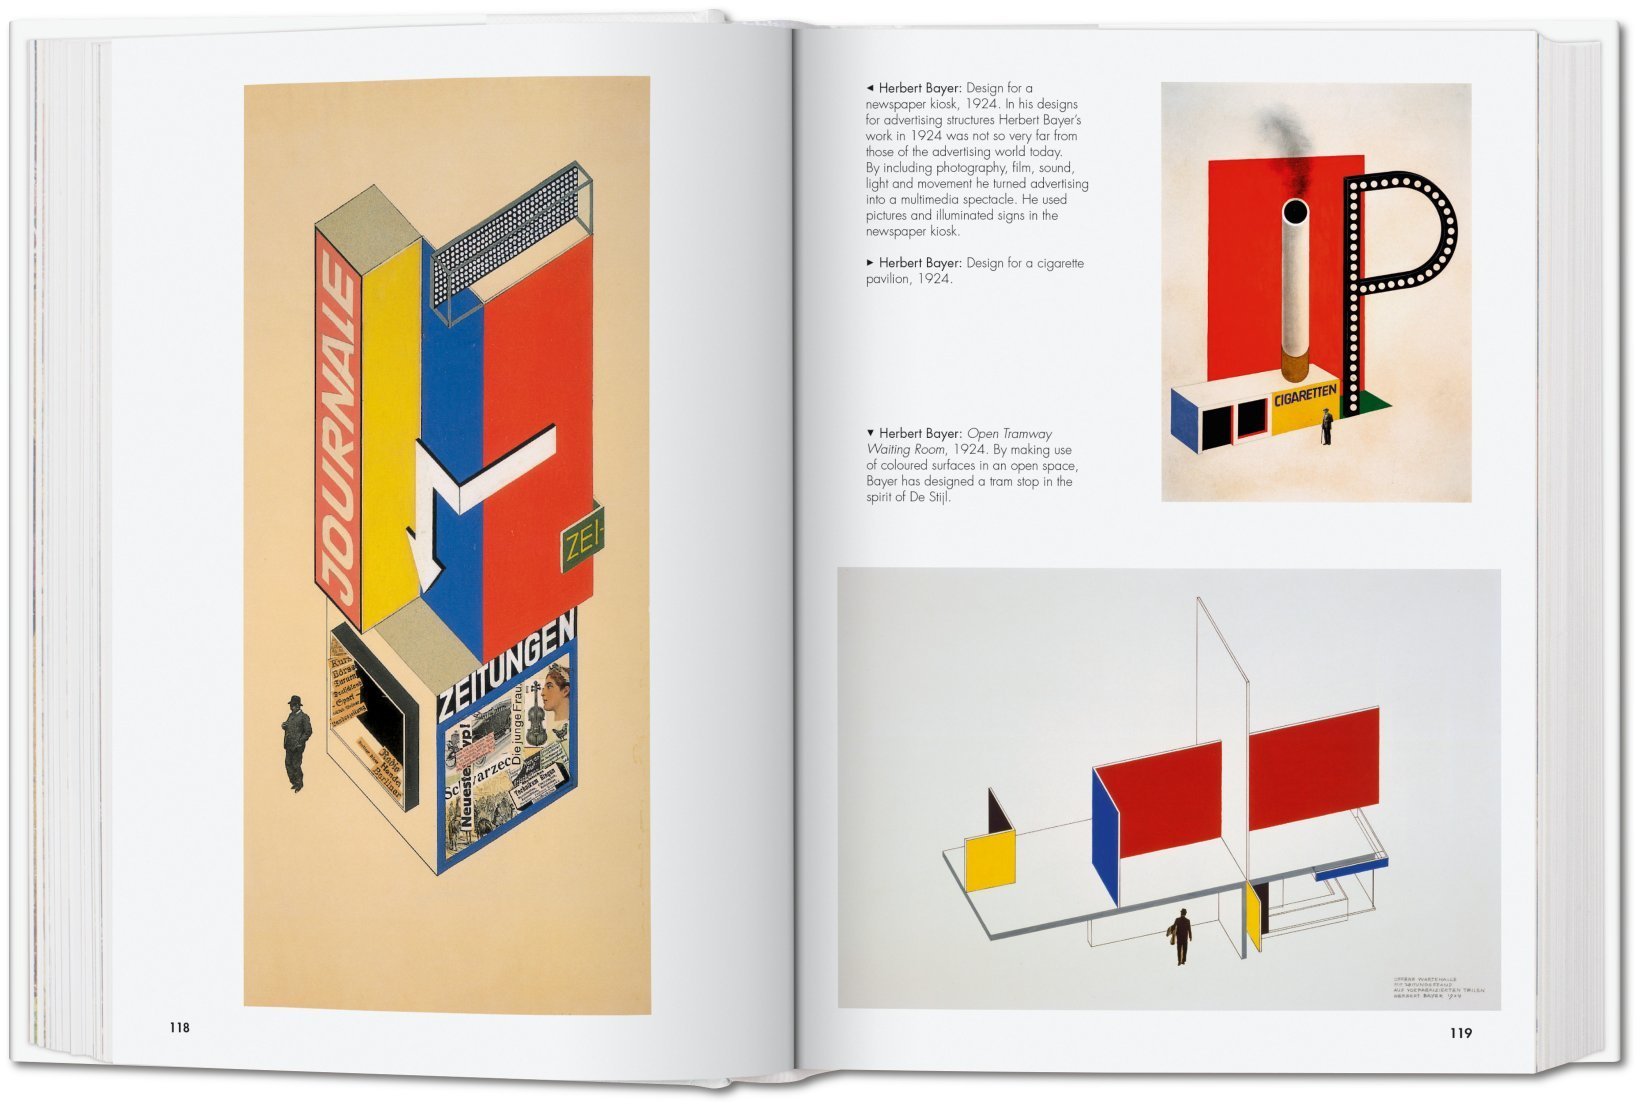 Best of Bauhaus